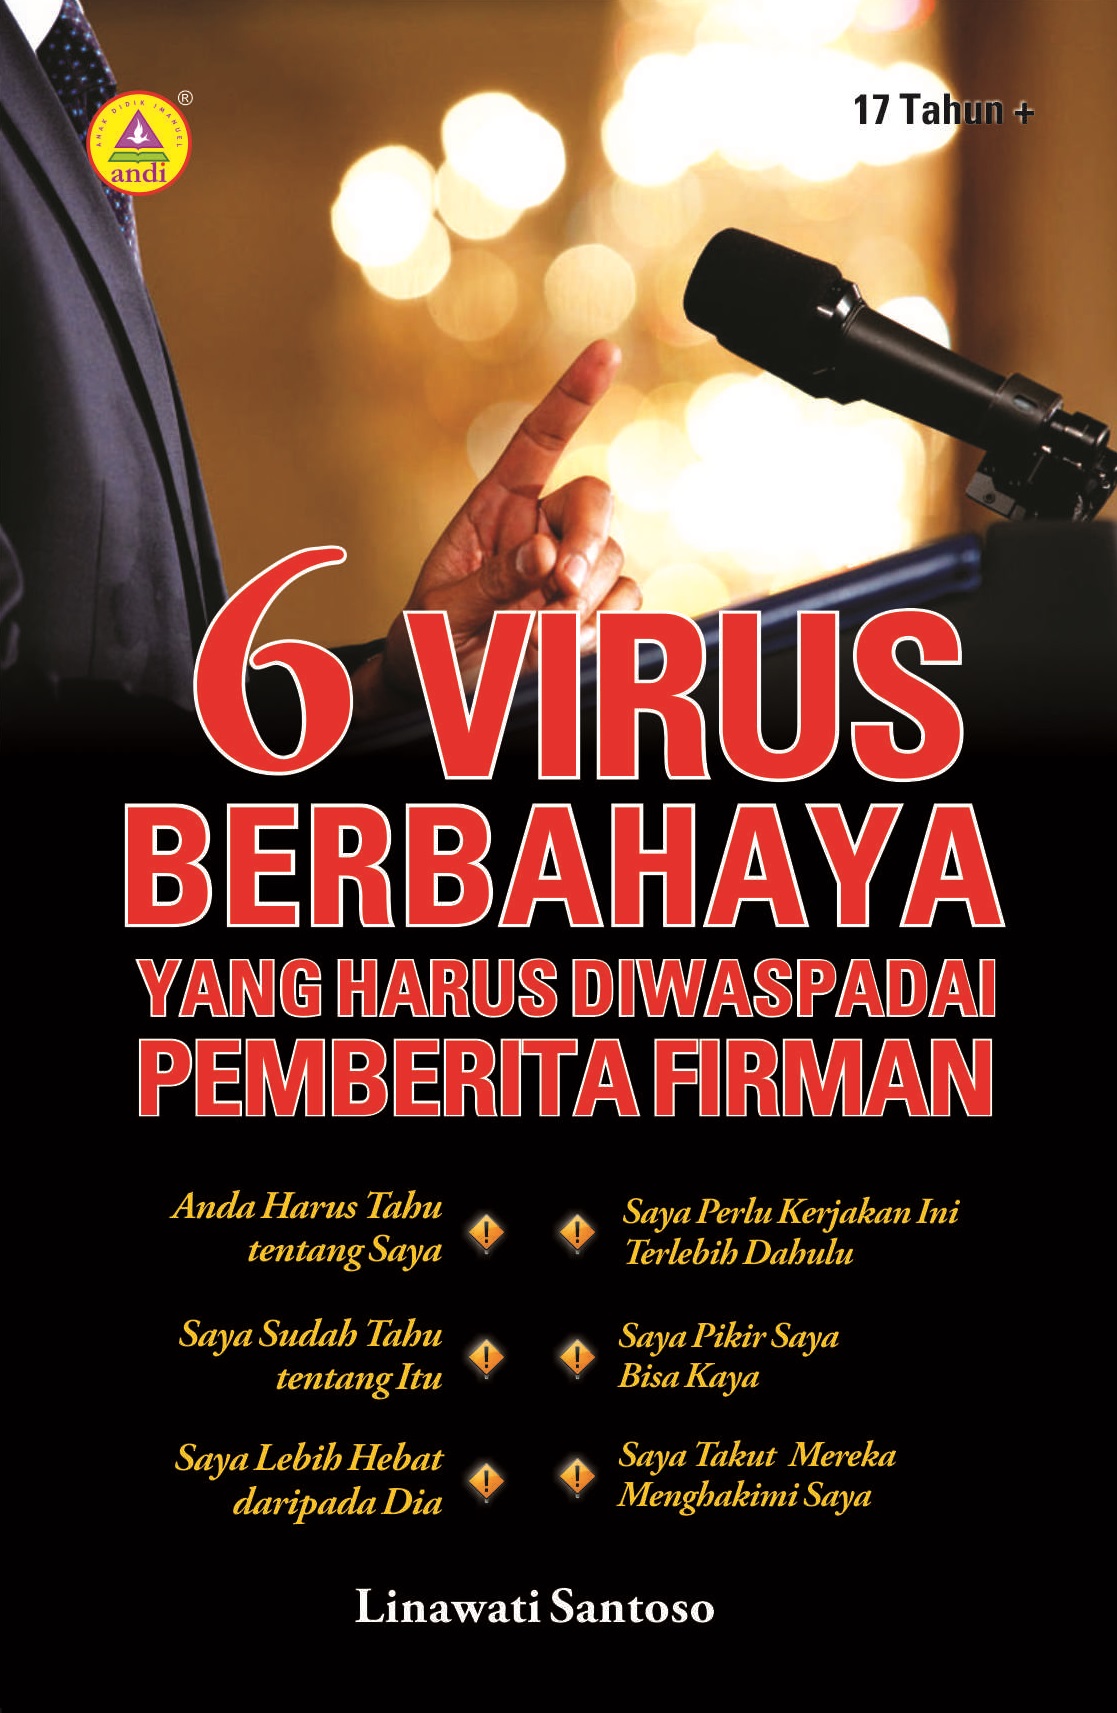 6 virus berbahaya yang harus diwaspadai pemberita firman [sumber elektronis]